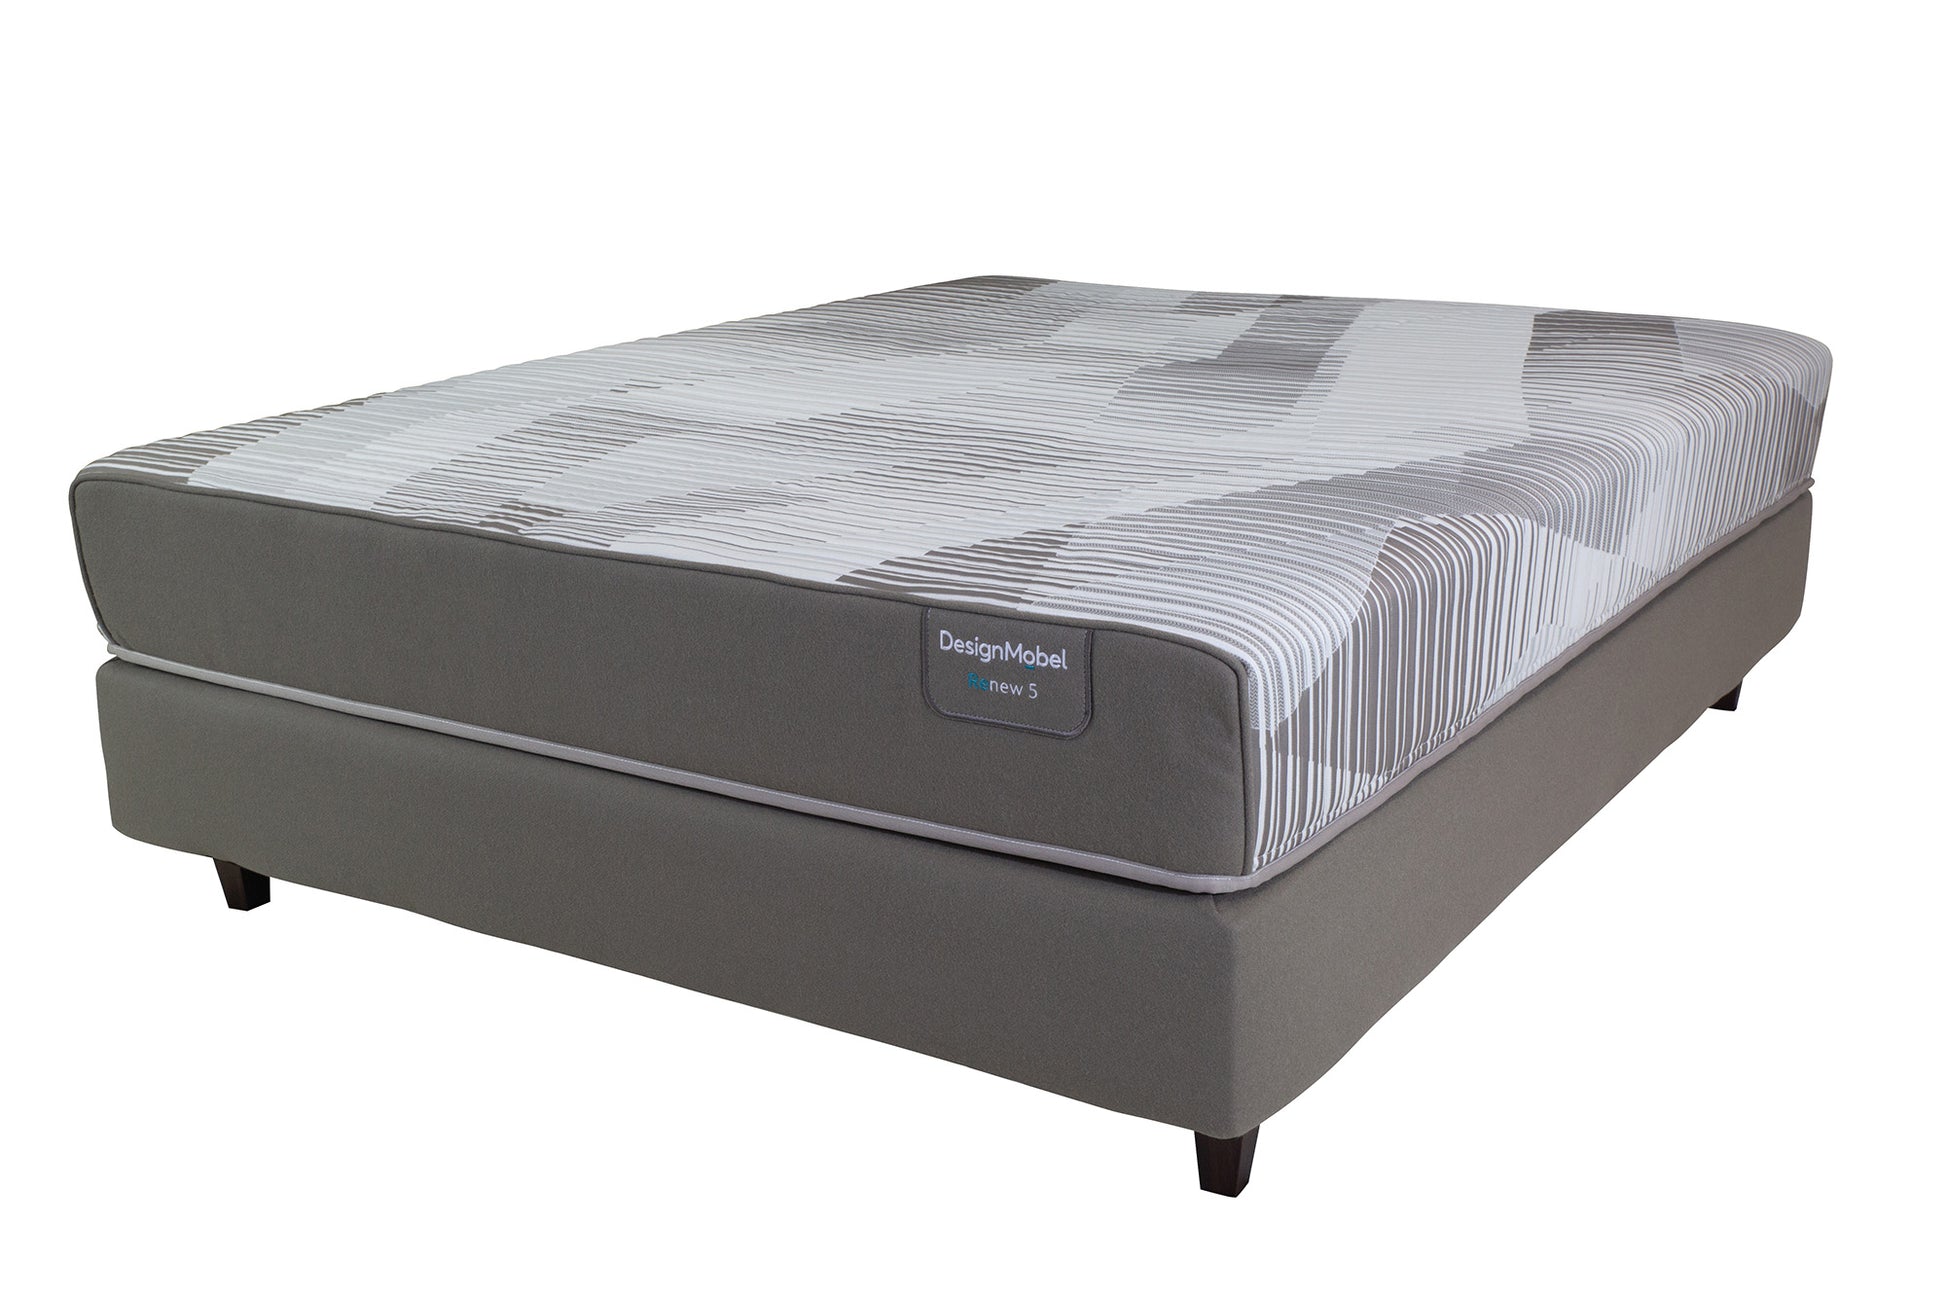 renew5-queen-mattress-2